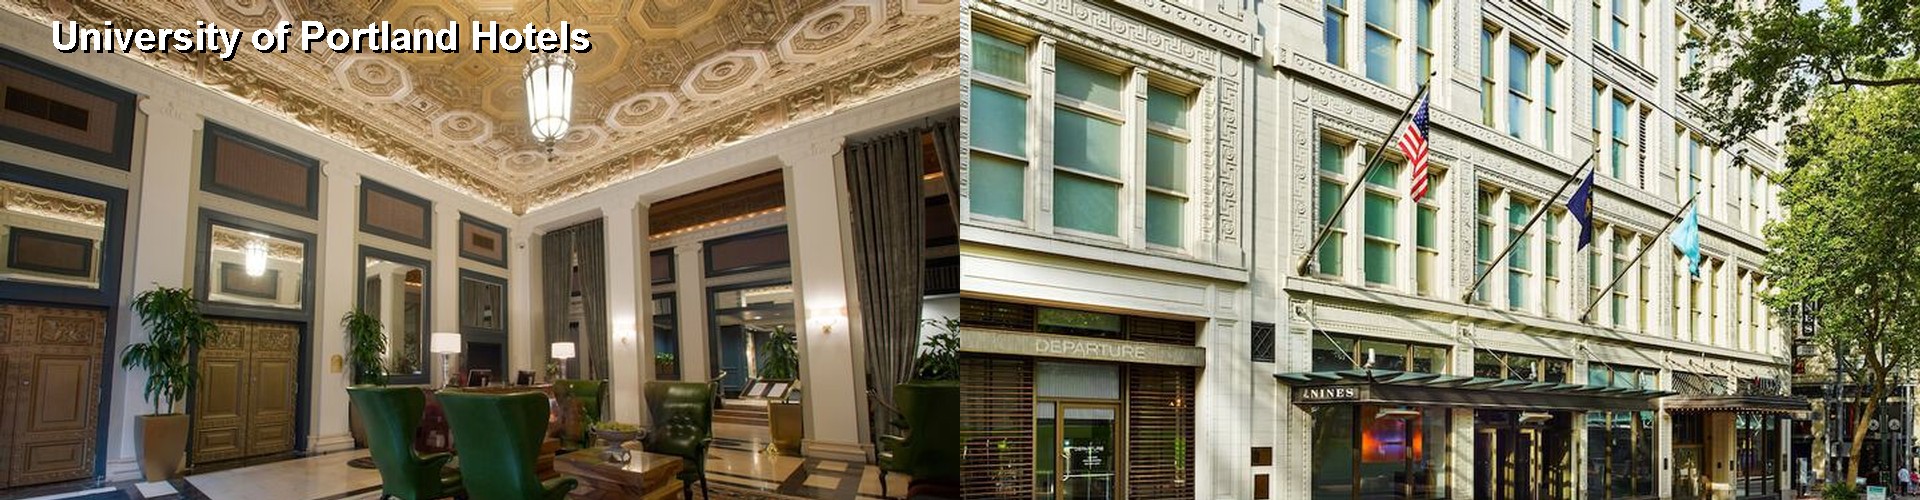 5 Best Hotels near University of Portland